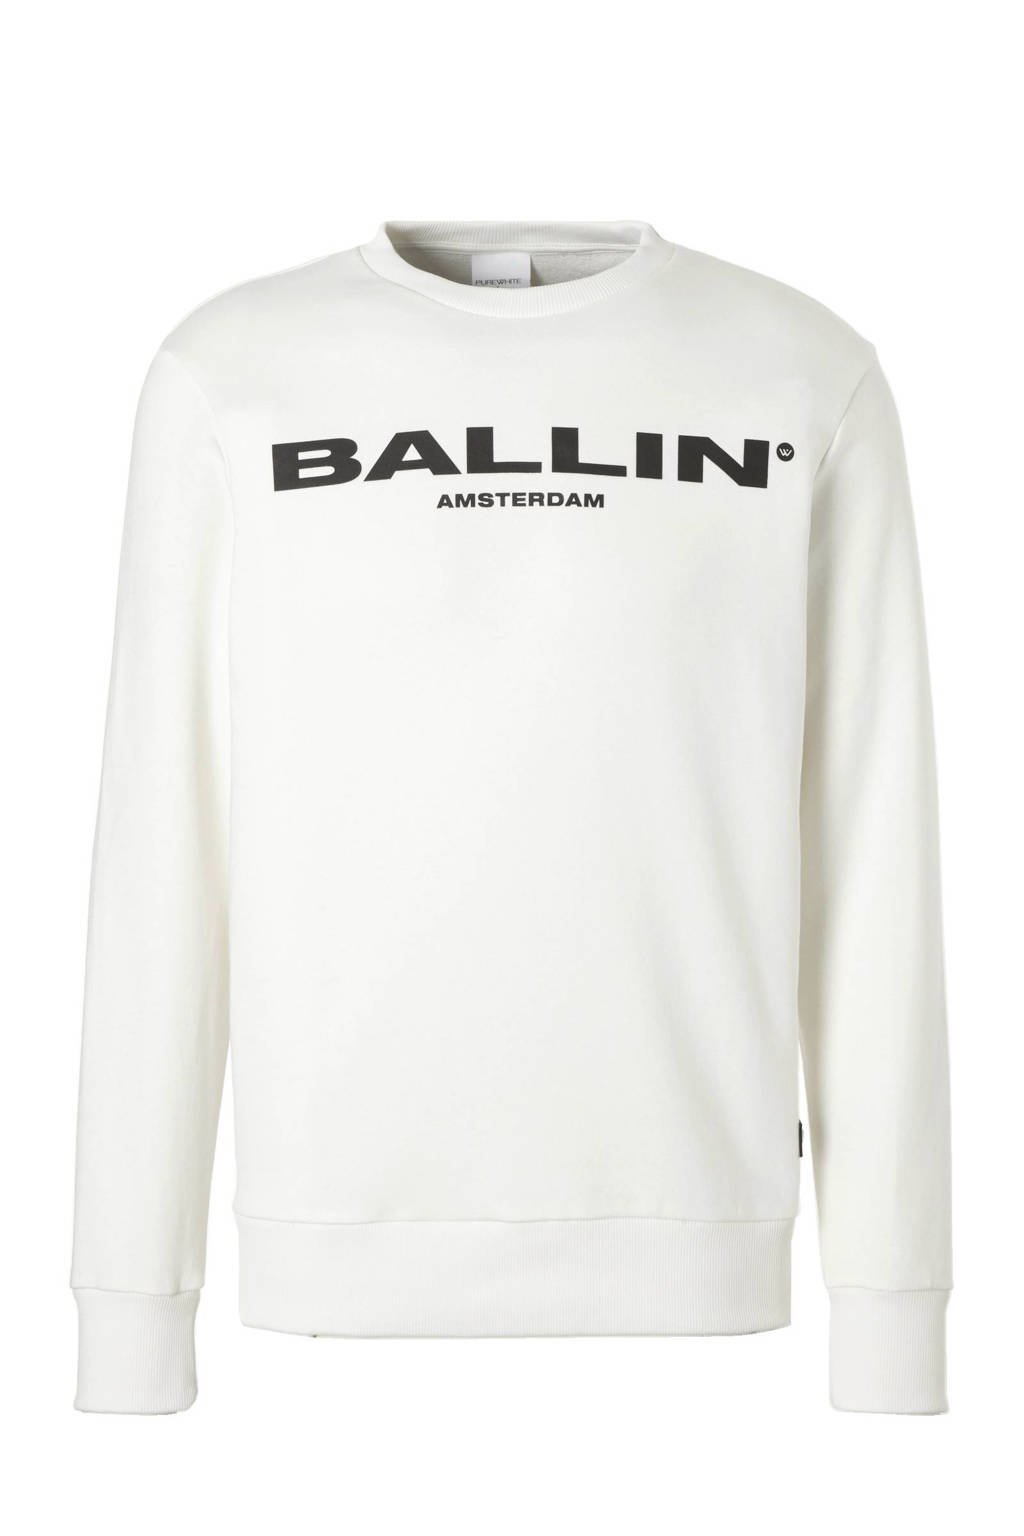 Ballin sweater |